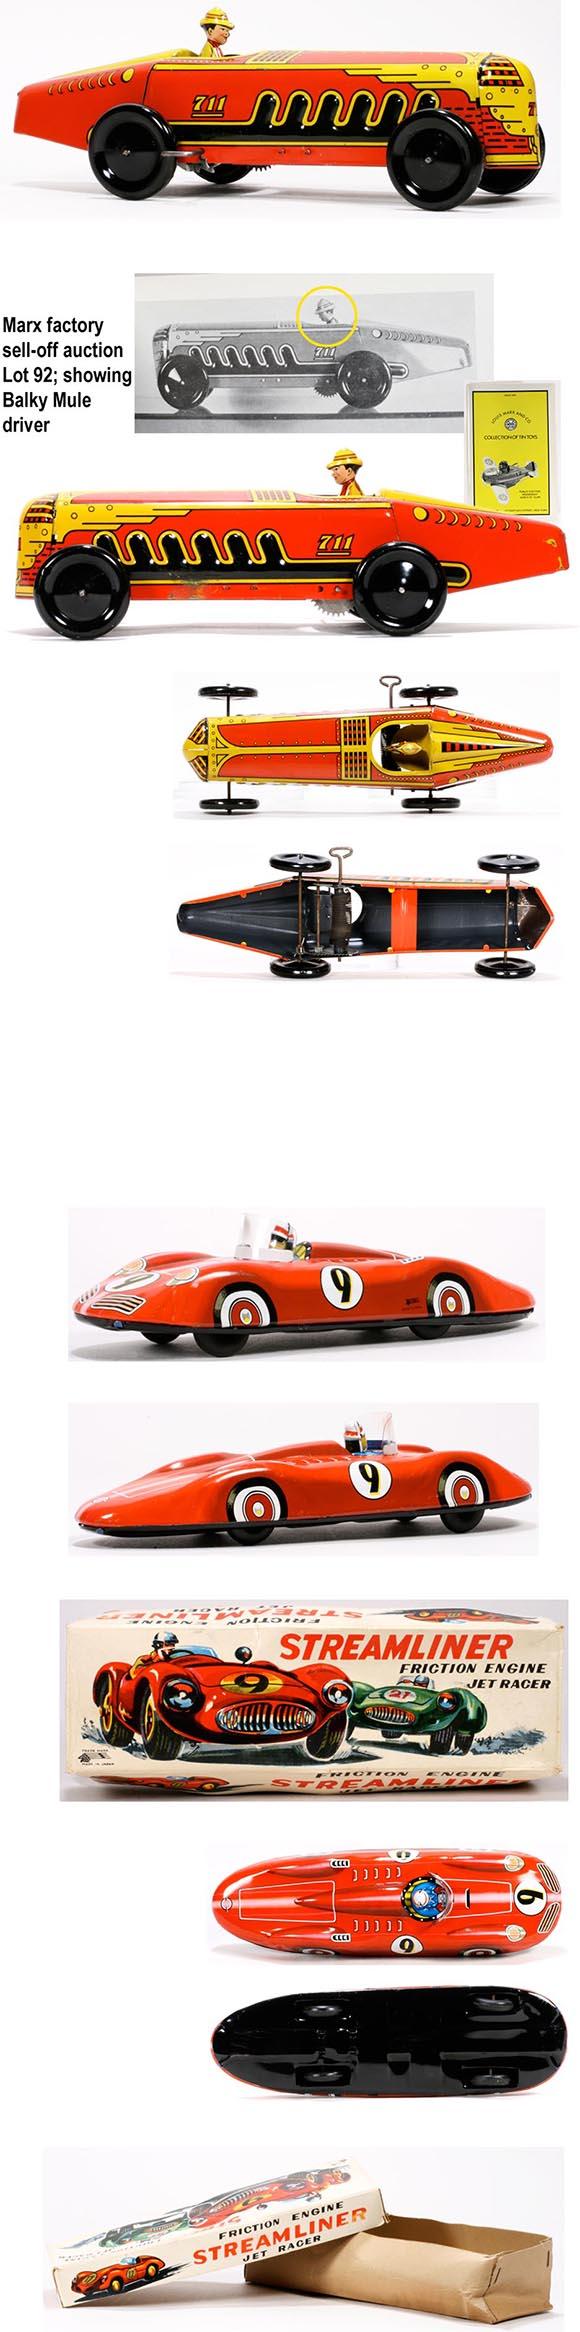 1941 Marx Giant King Racer & c.1960 Ichimura Streamliner Jet Racer in Original Box